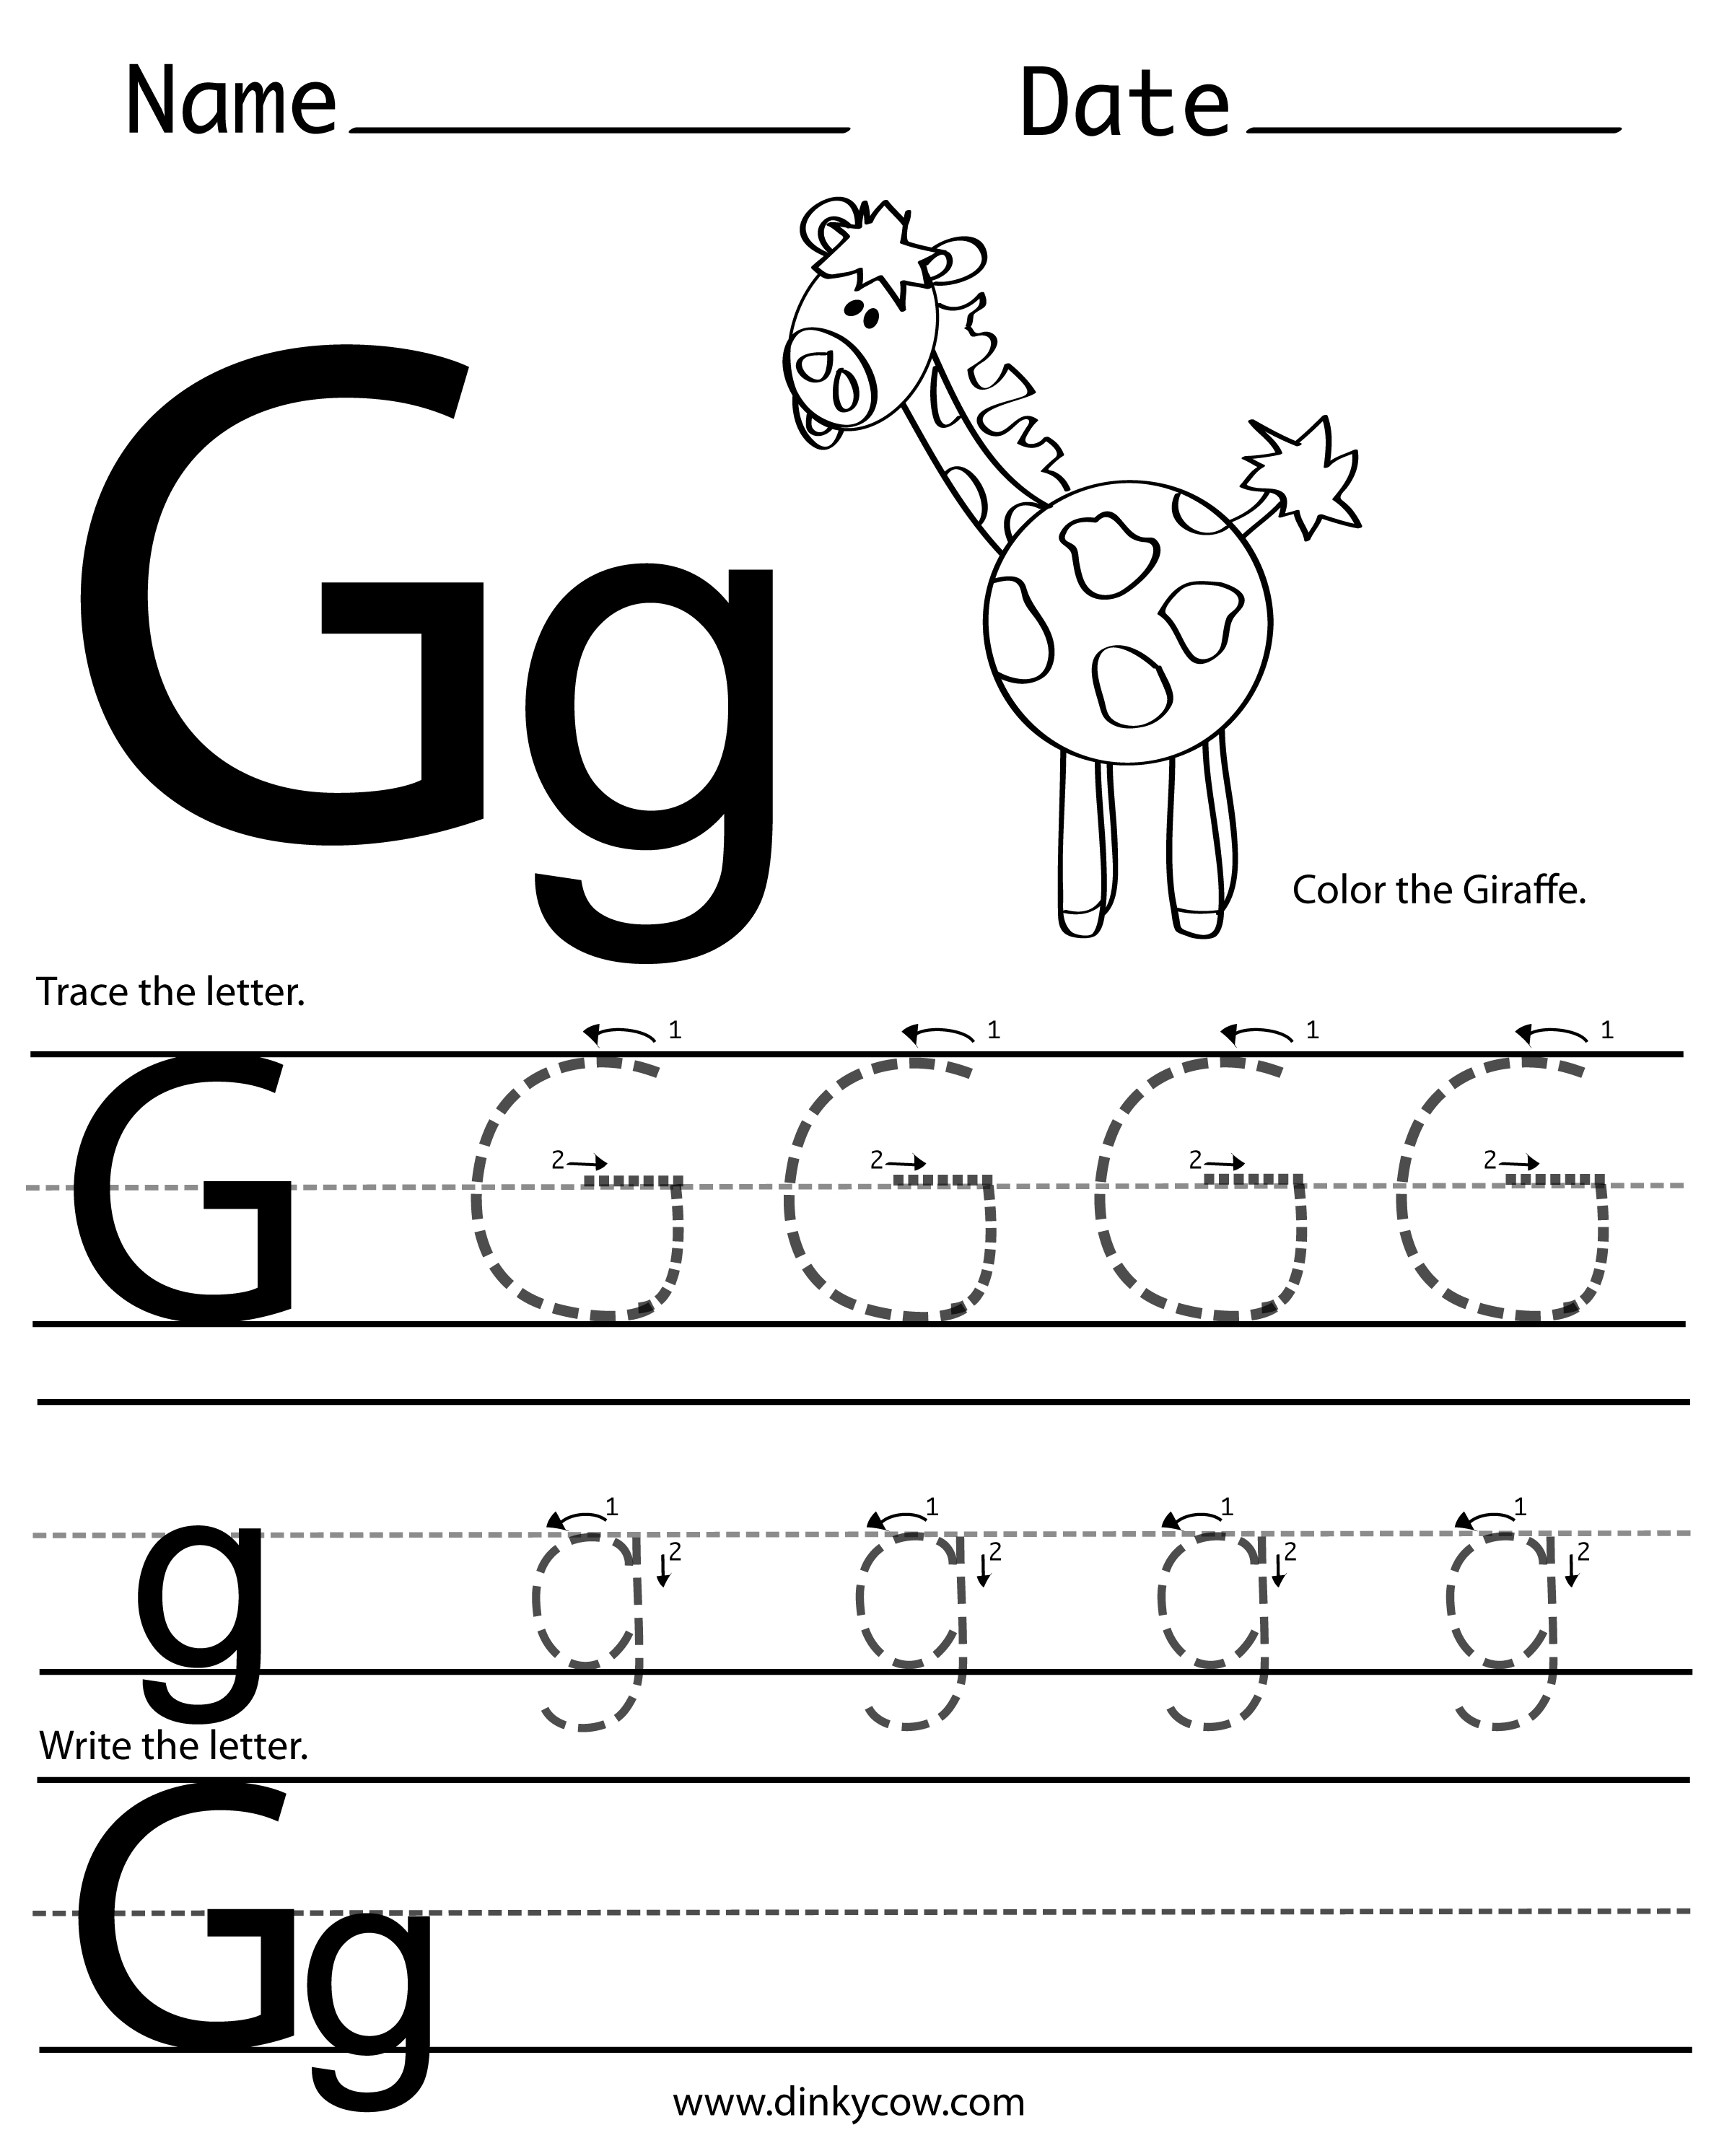 6 Best Images of Free Printable Alphabet Letter G Worksheets